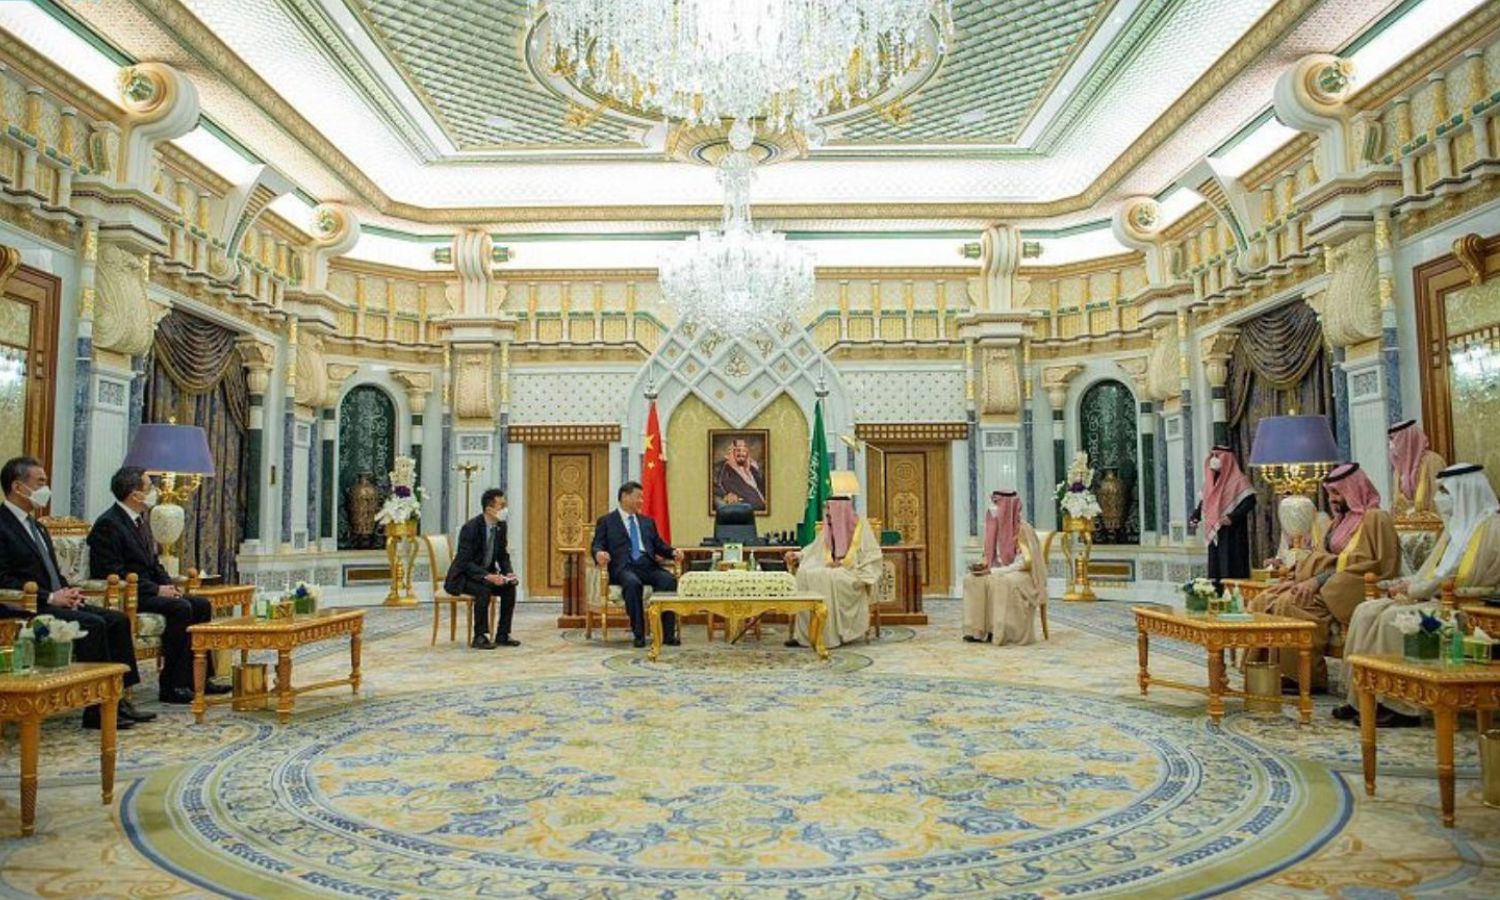 الملك السعودي سلمان بن عبد العزيز يتحدث إلى الرئيس الصيني شي جين بينغ خلال القمة السعودية الصينية_ 9 من كانون الأول 2022 (واس)